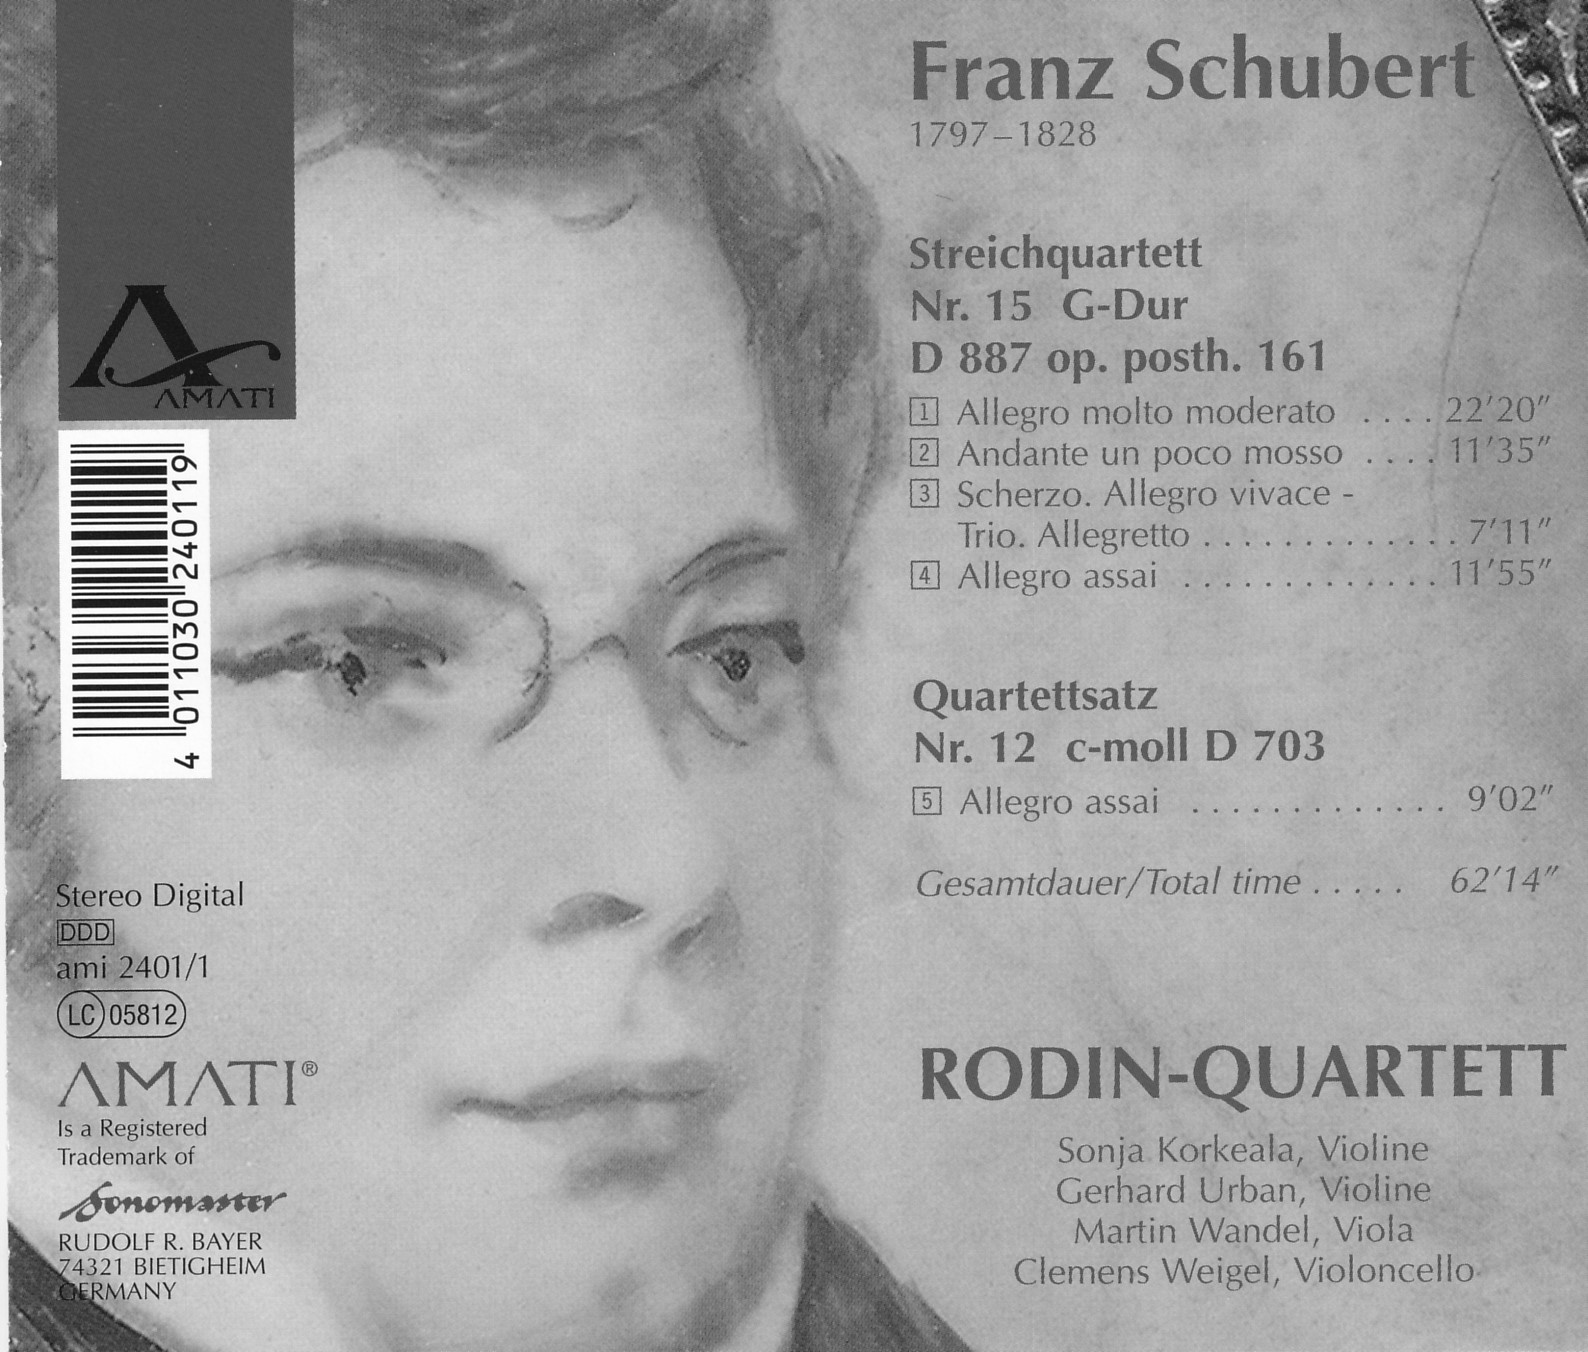 Franz Schubert - G-Dur D 887 & c-moll D 703